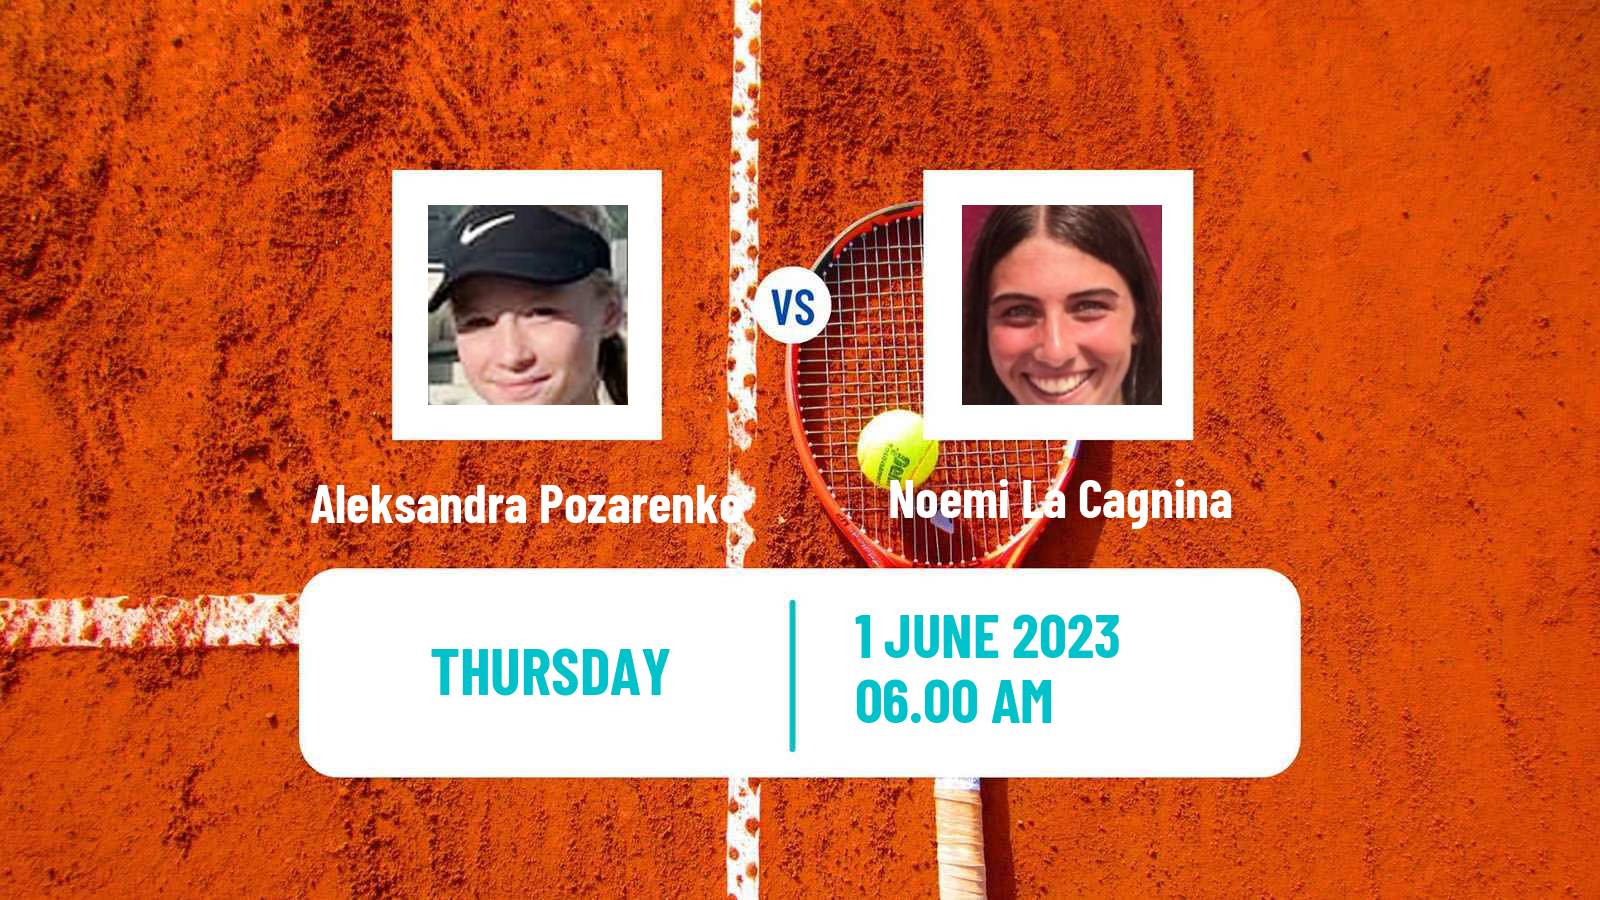 Tennis ITF W15 Monastir 17 Women Aleksandra Pozarenko - Noemi La Cagnina